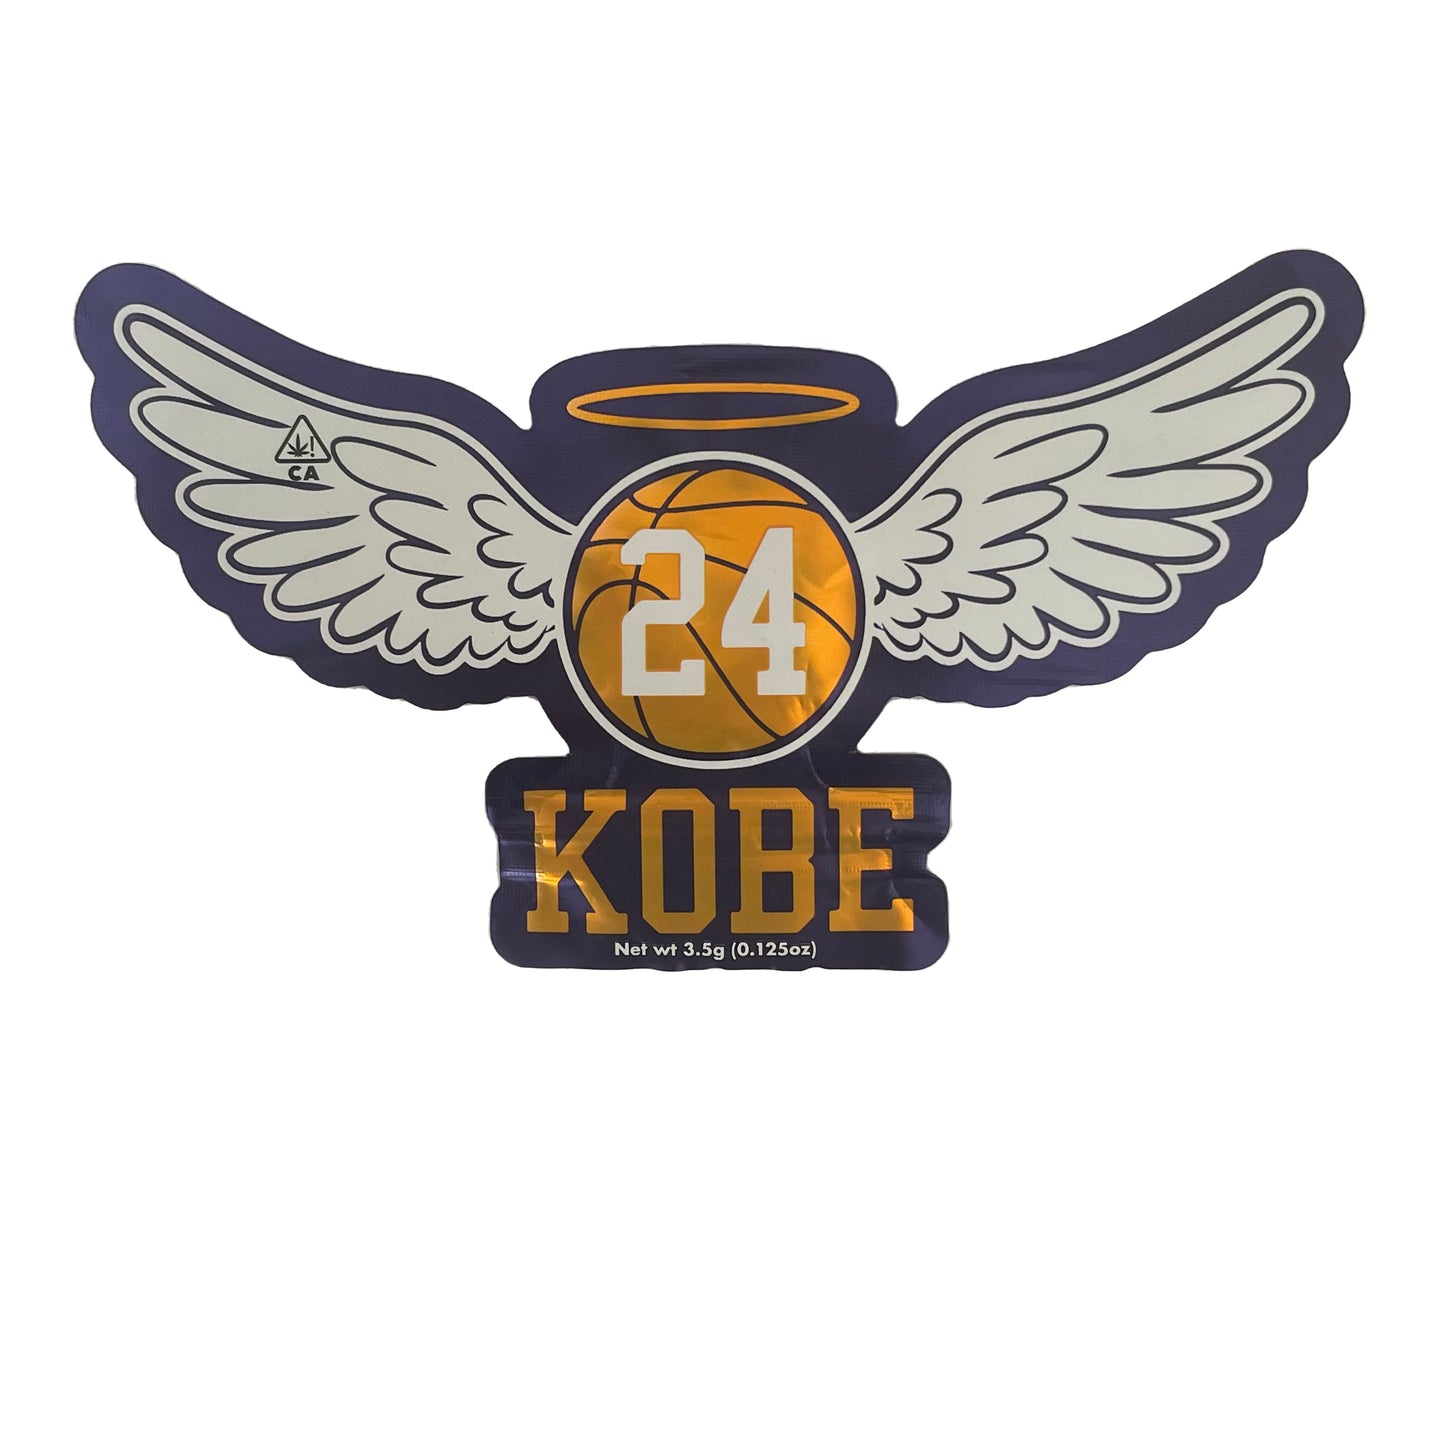 Wings of Kobe Cutout 3.5G Mylar Bags